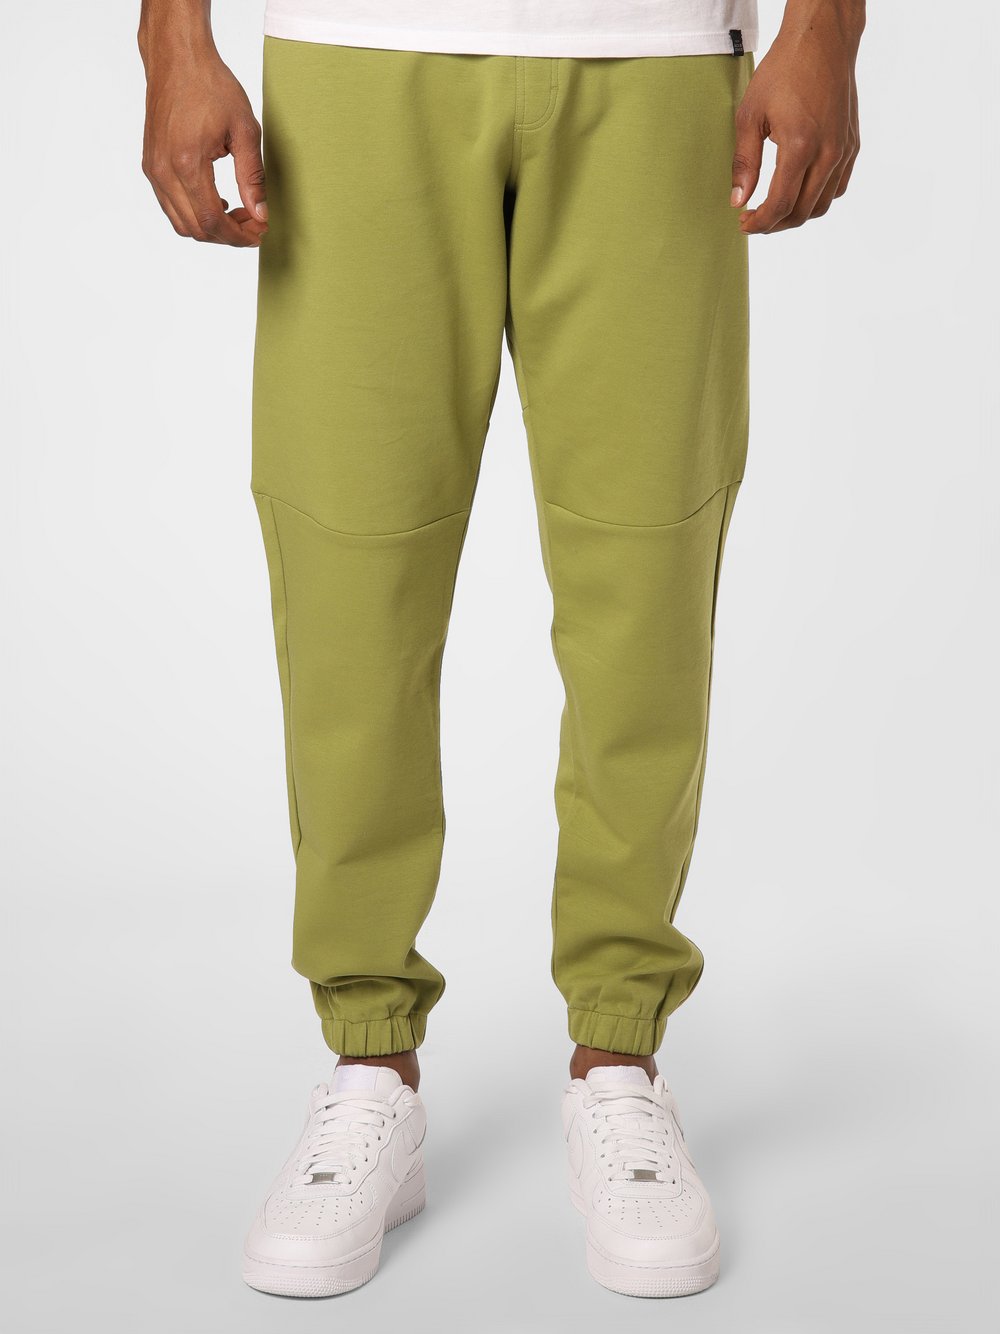 Calvin Klein - Spodnie dresowe męskie, zielony